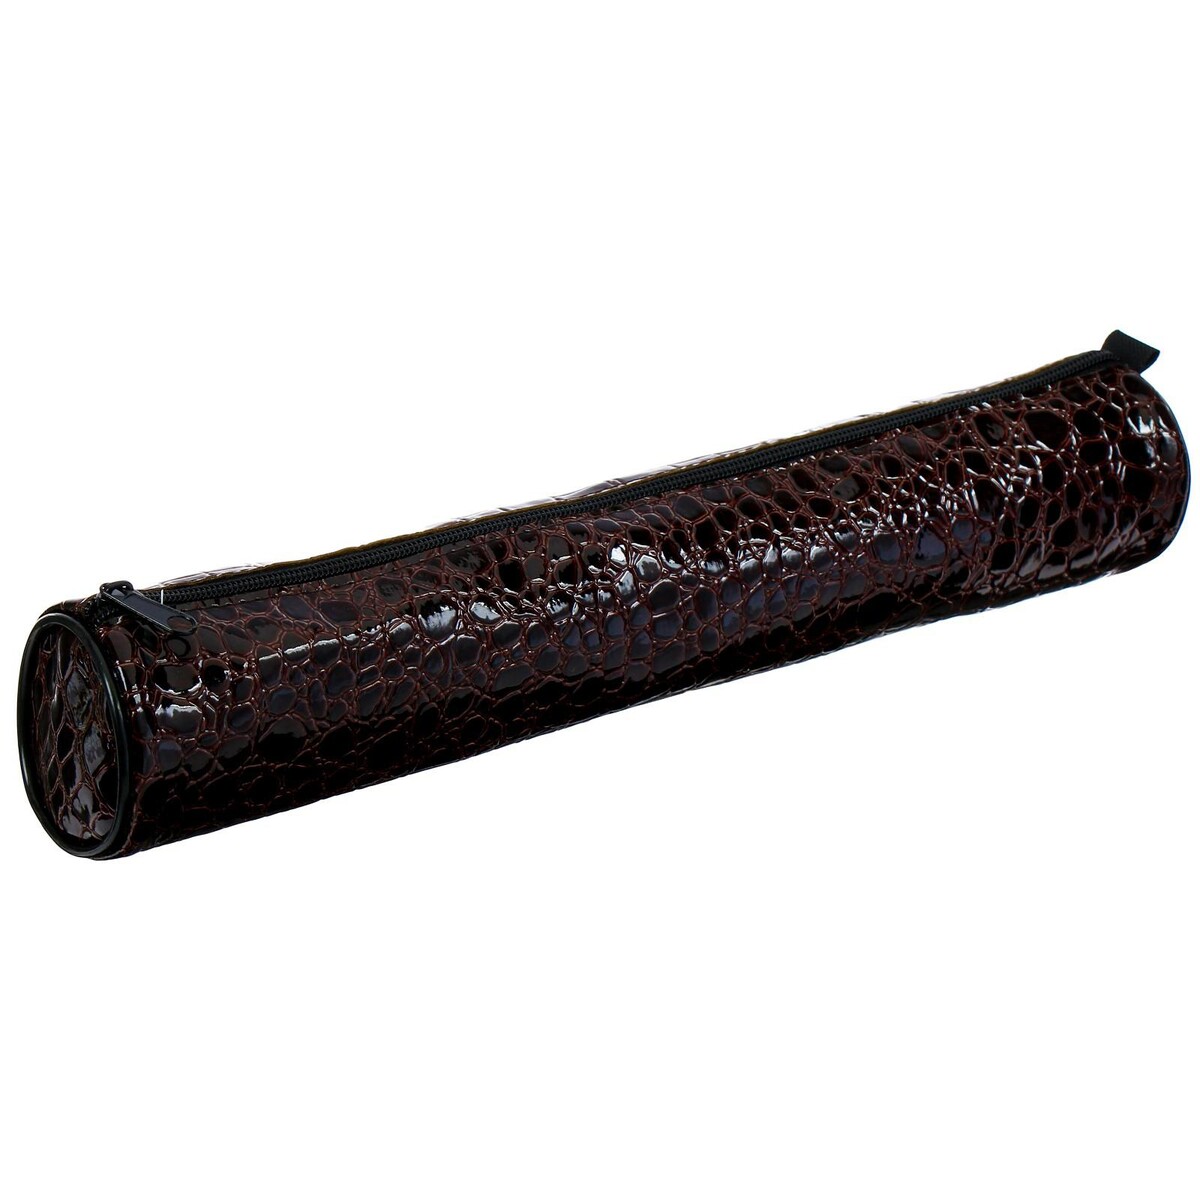 фото Пенал-тубус для кистей, мягкий, 355 х 65 мм, 7к37, кожзам, принт рептилия, глянцевый, коричневый calligrata